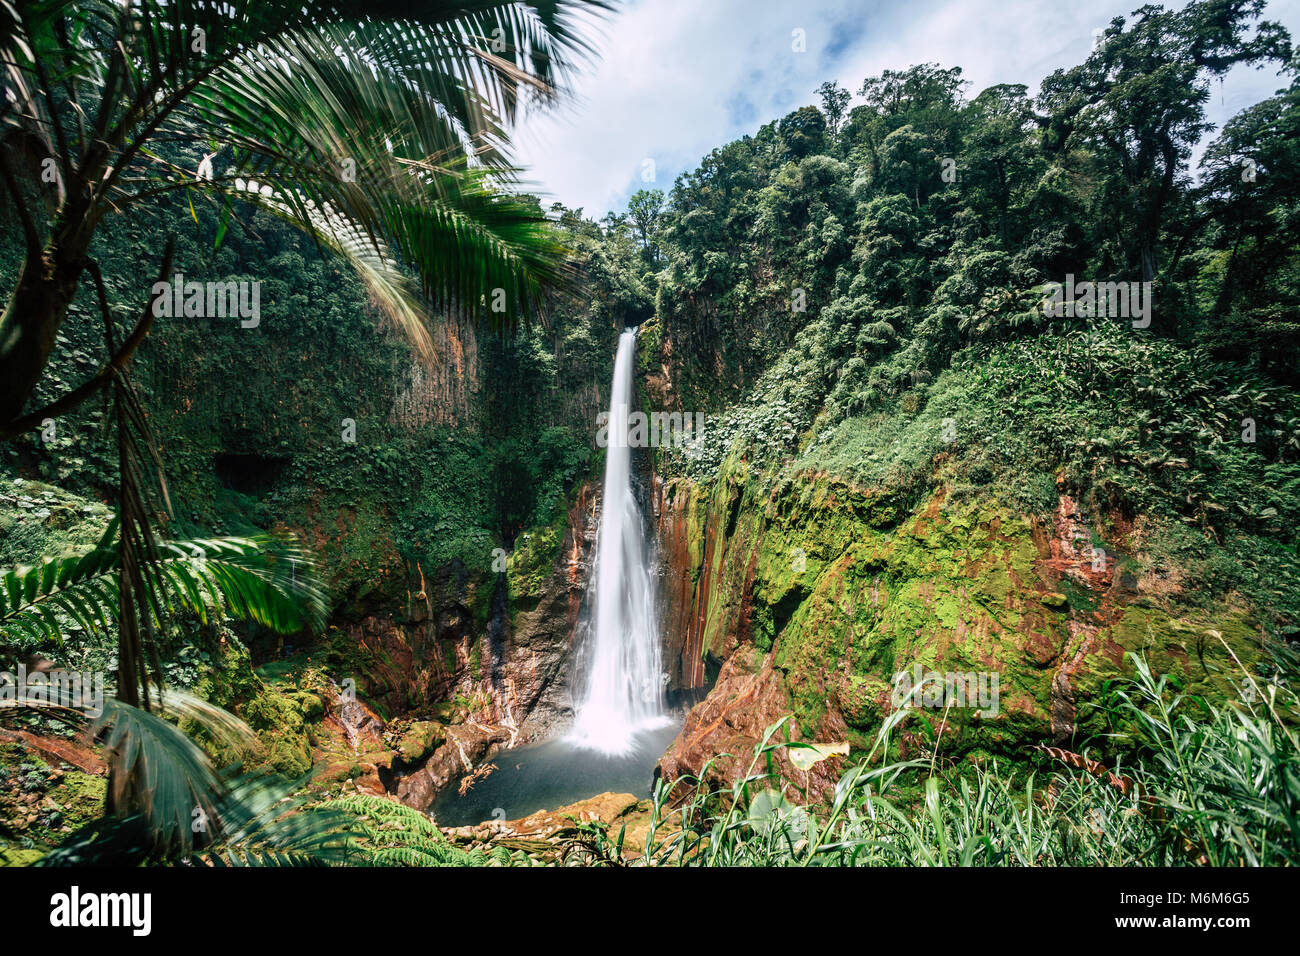 Catarata del Toro, waterfall in the rain forest, Costa Rica Stock Photo